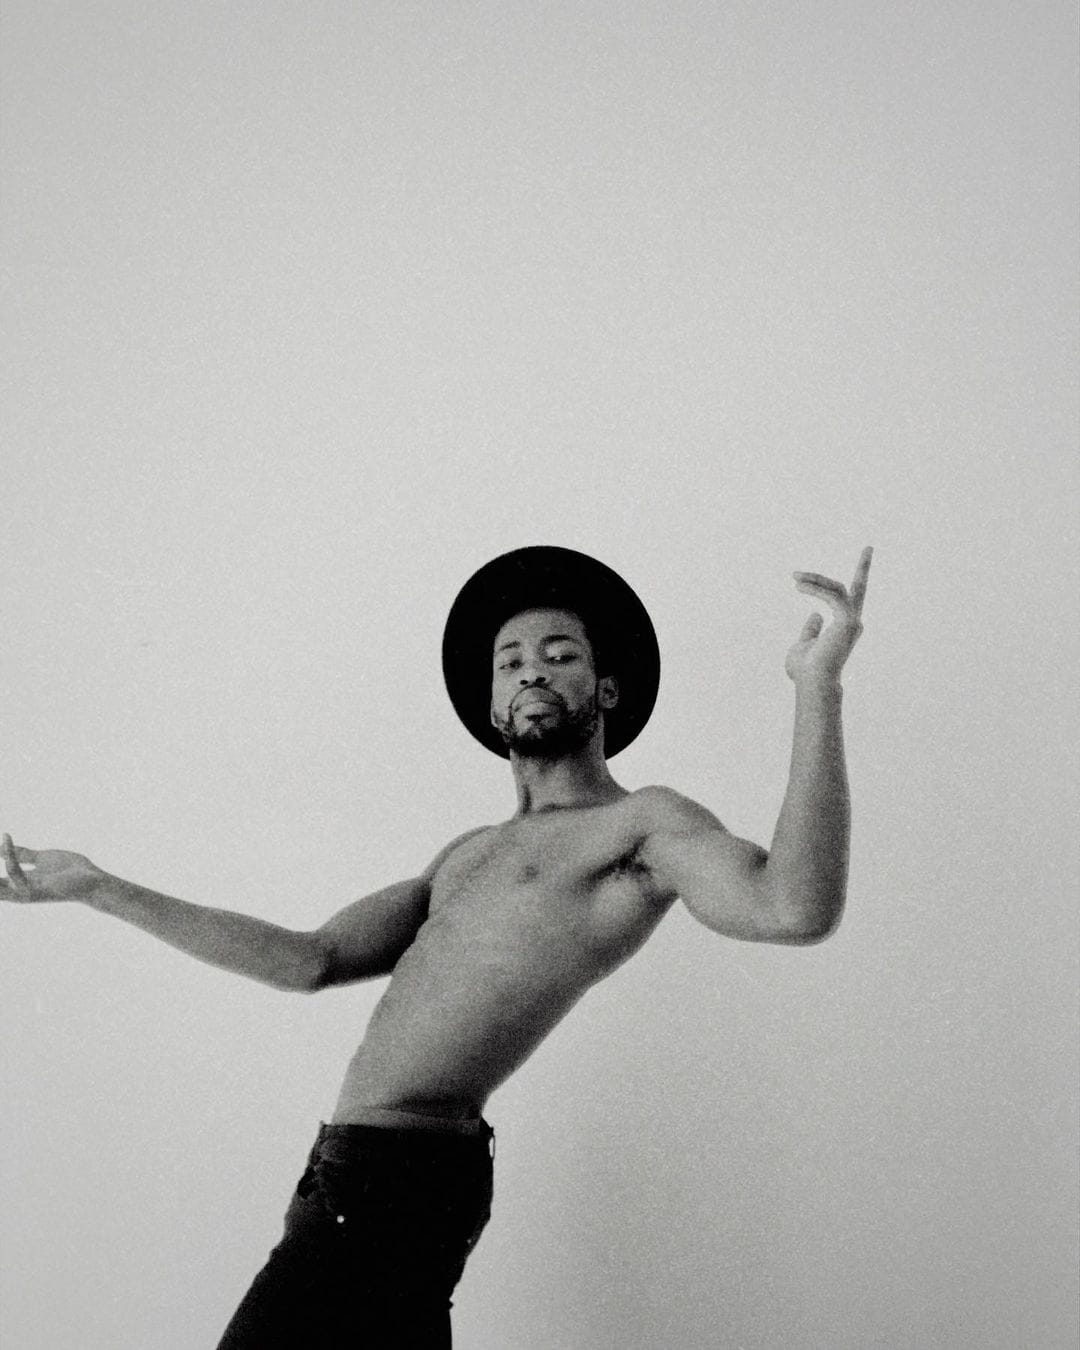 Autoportrait du chanteur Annael. Torse nu, il danse, le corps en mouvement. Il porte un chapeau noir qui contraste avec le fond blanc. 